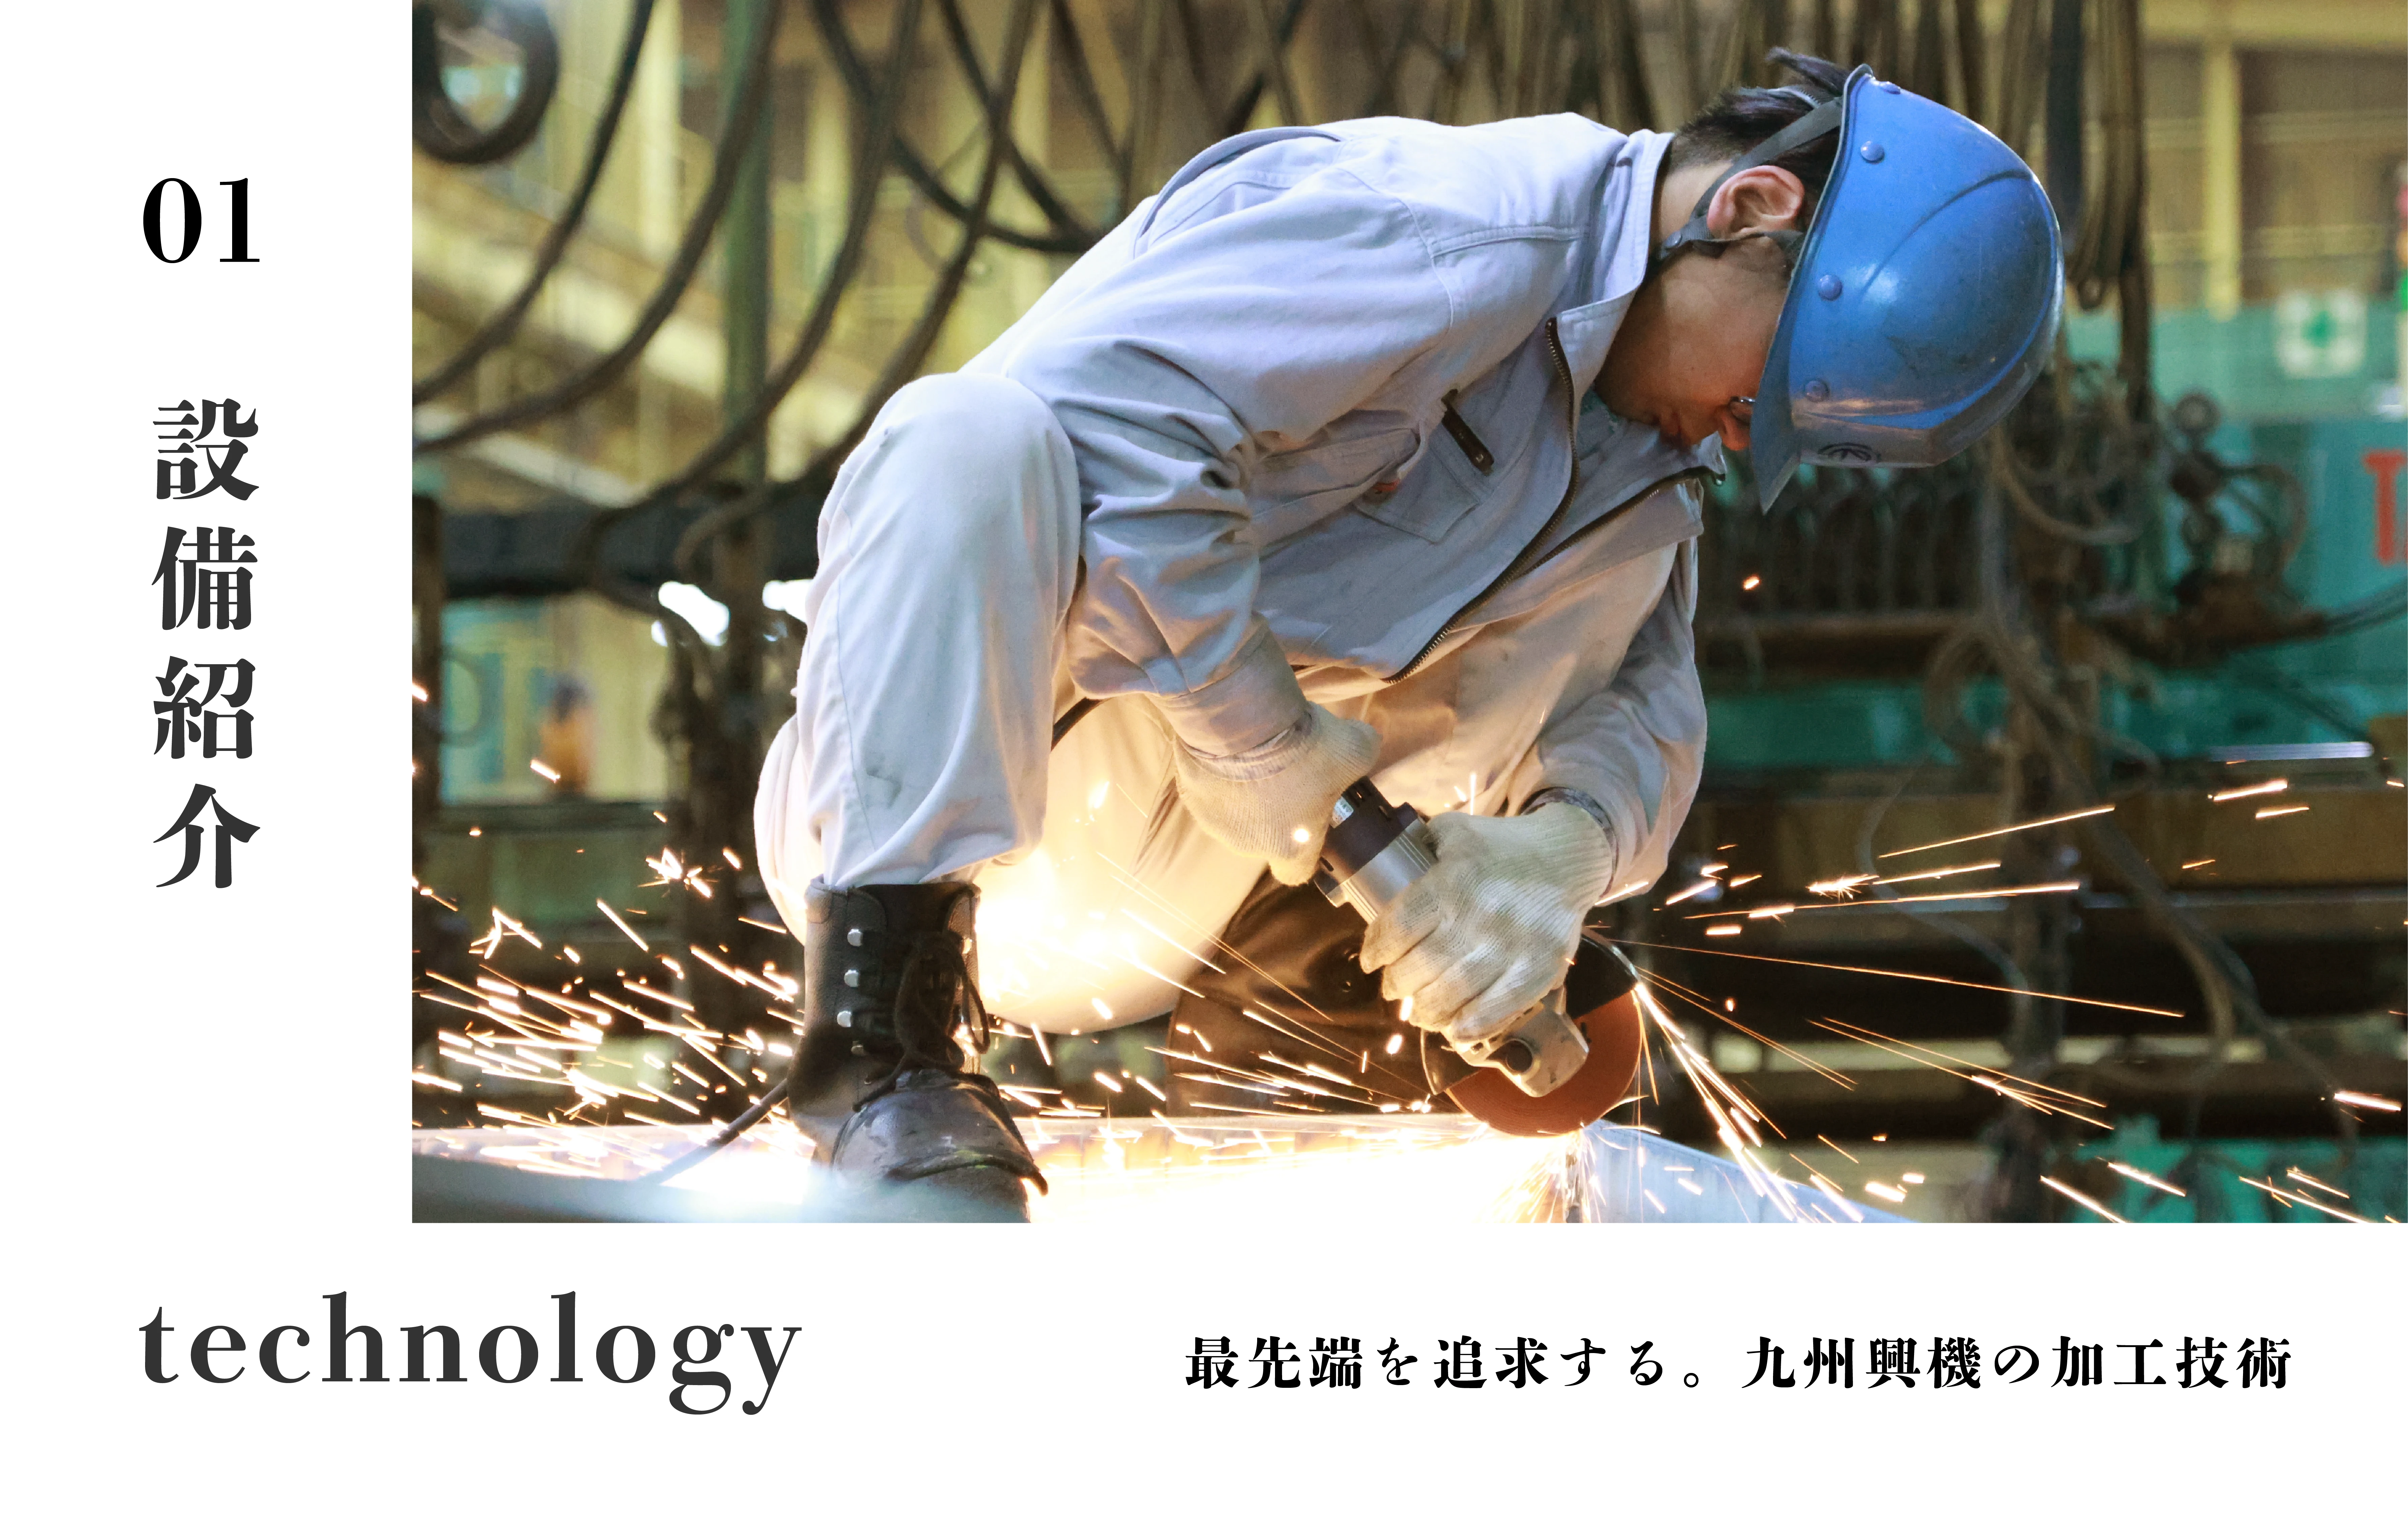 設備紹介 technology 最先端を追求する。九州興機の加工技術。